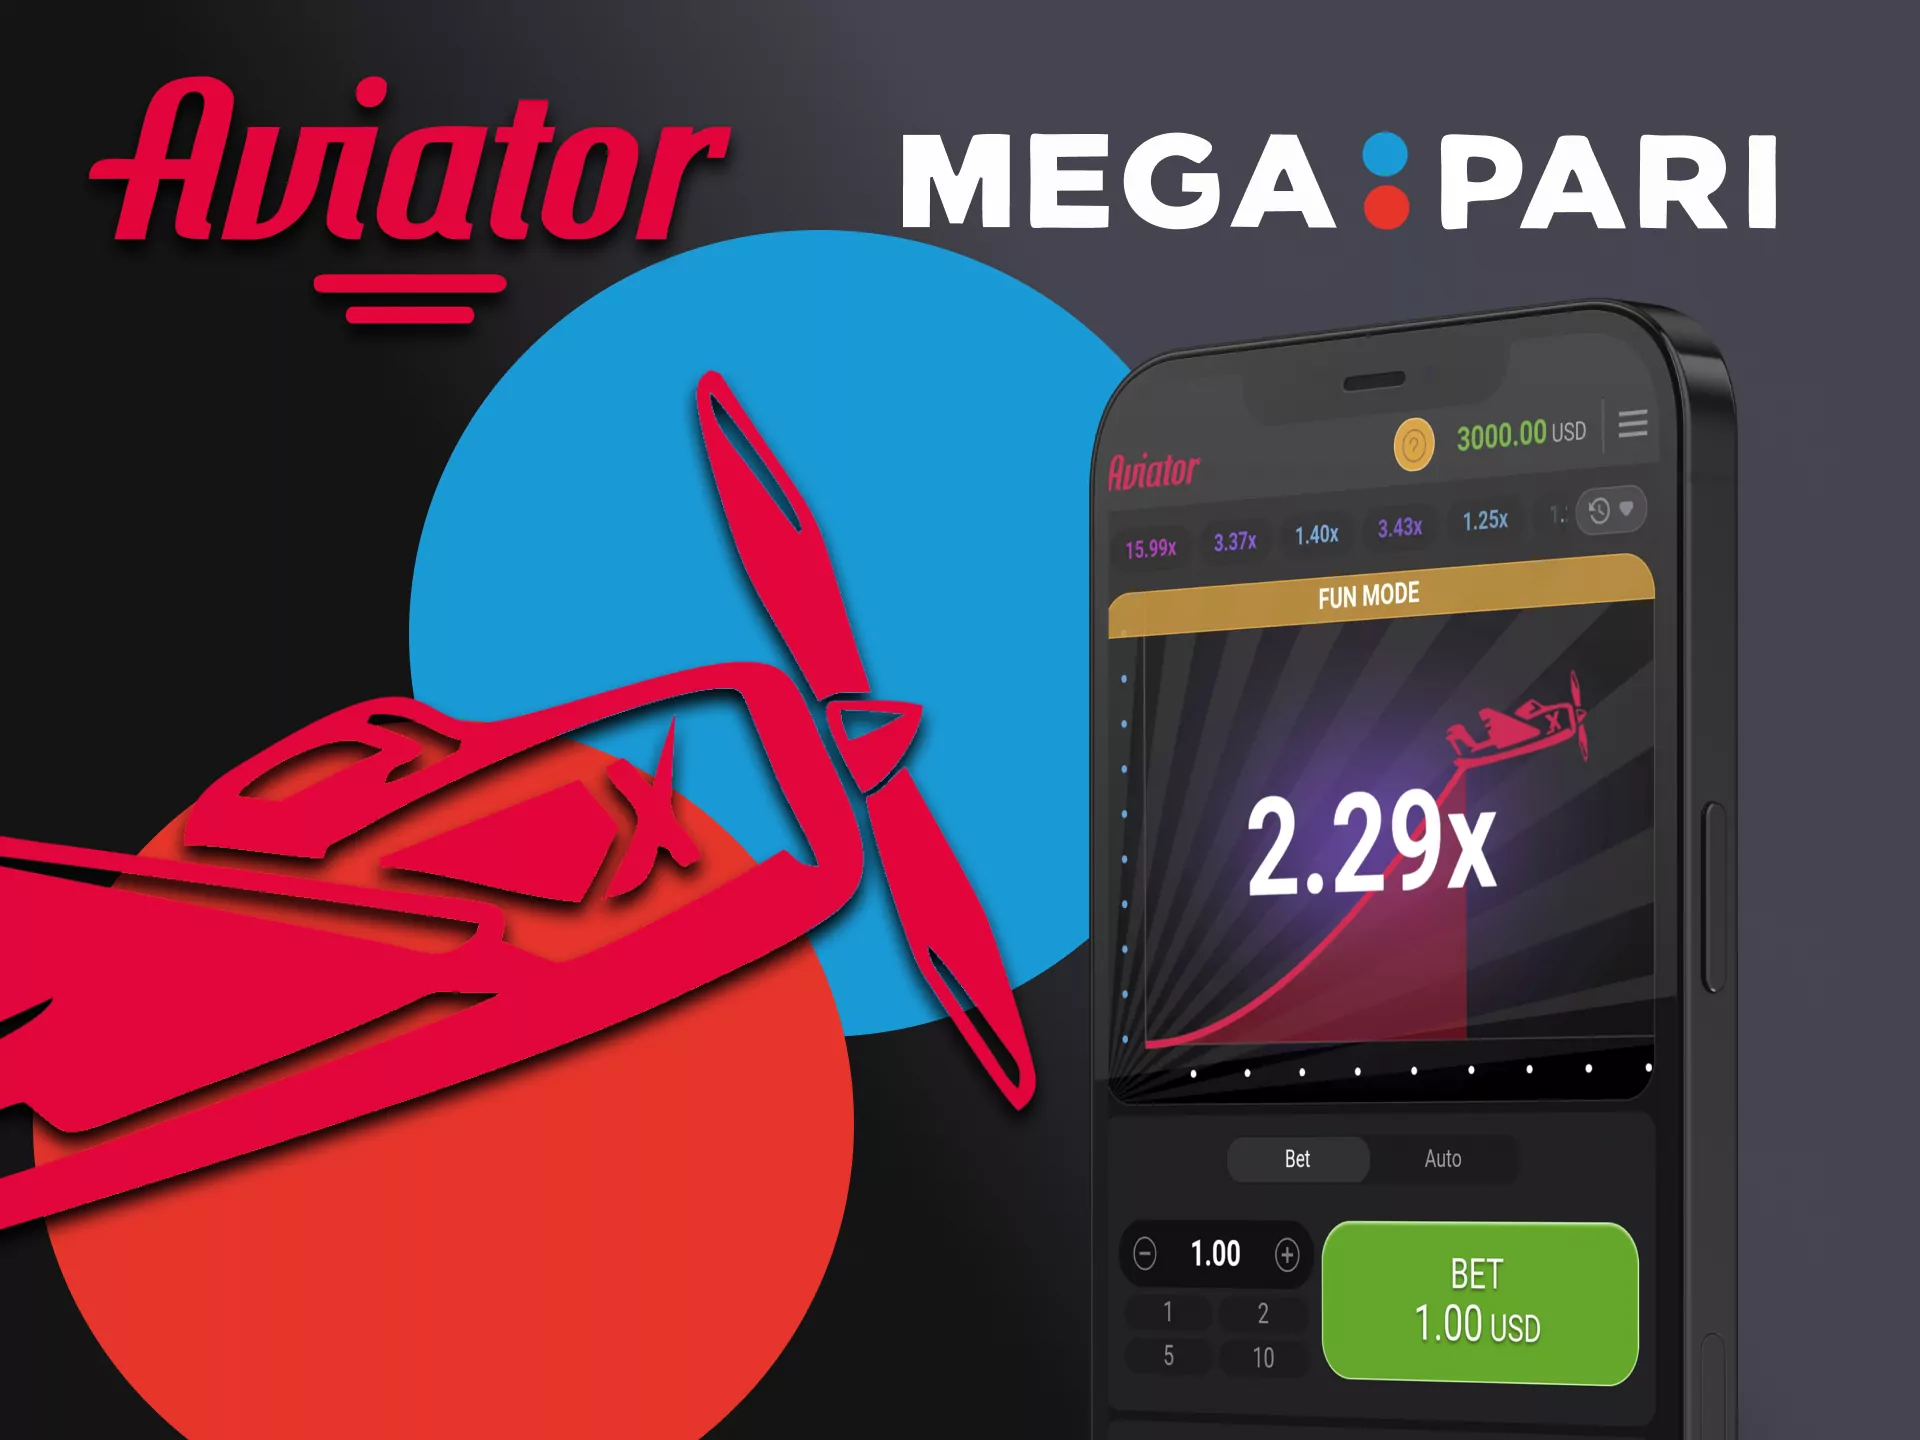 Play Avaitor through the Megapari app on iOS.